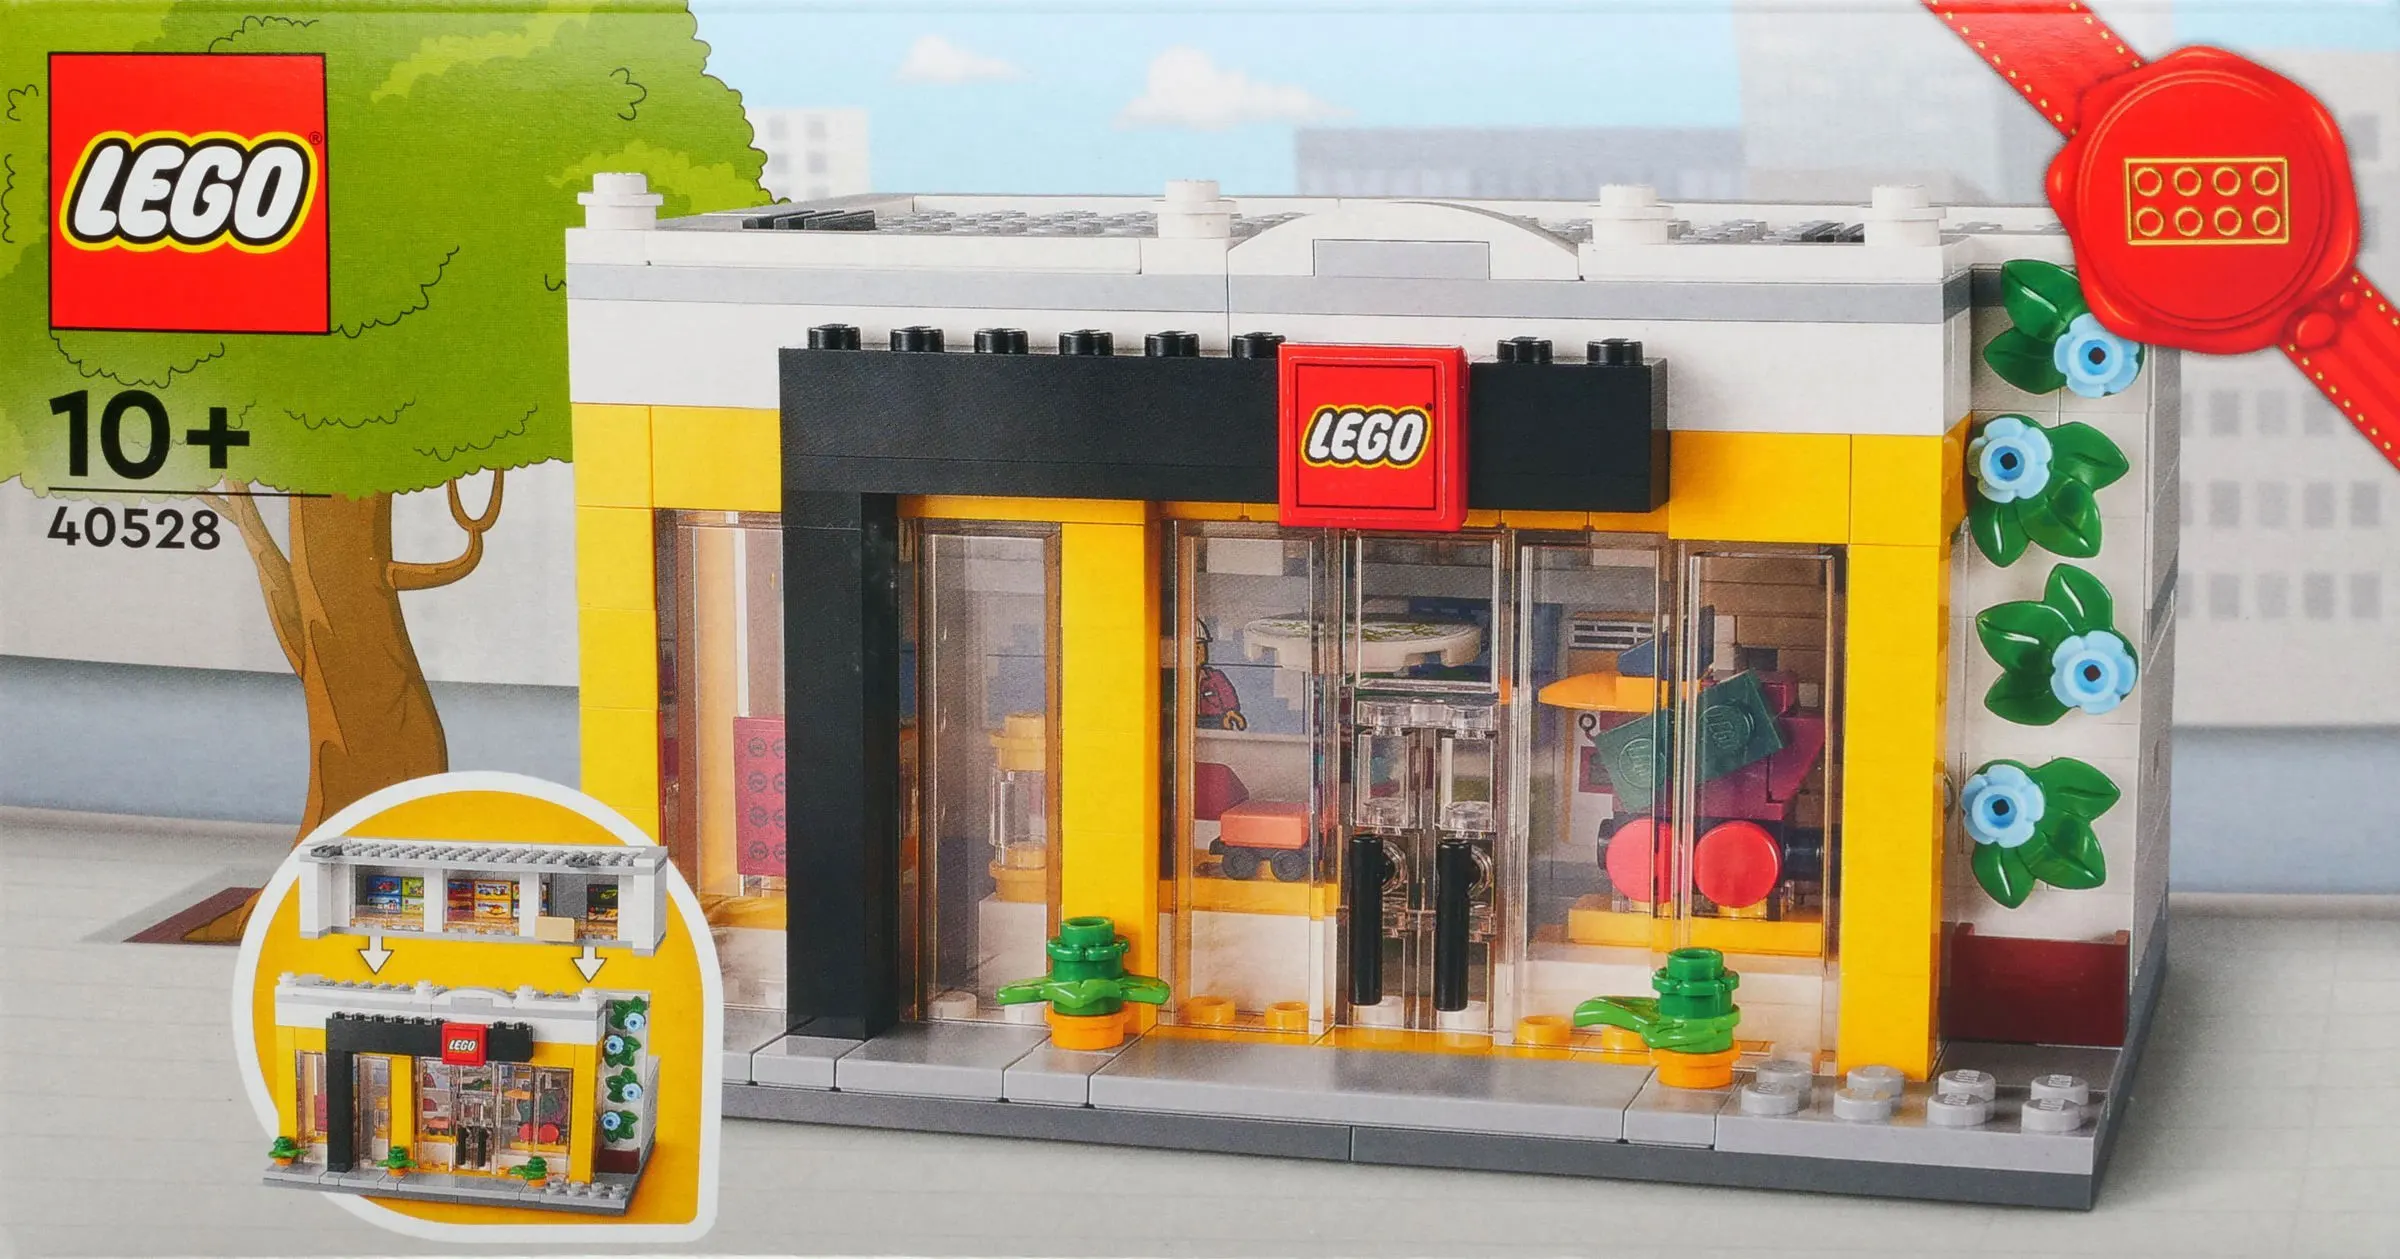 2022年配布開始見込みレゴ『40528 レゴストア』購入者プレゼント新製品情報